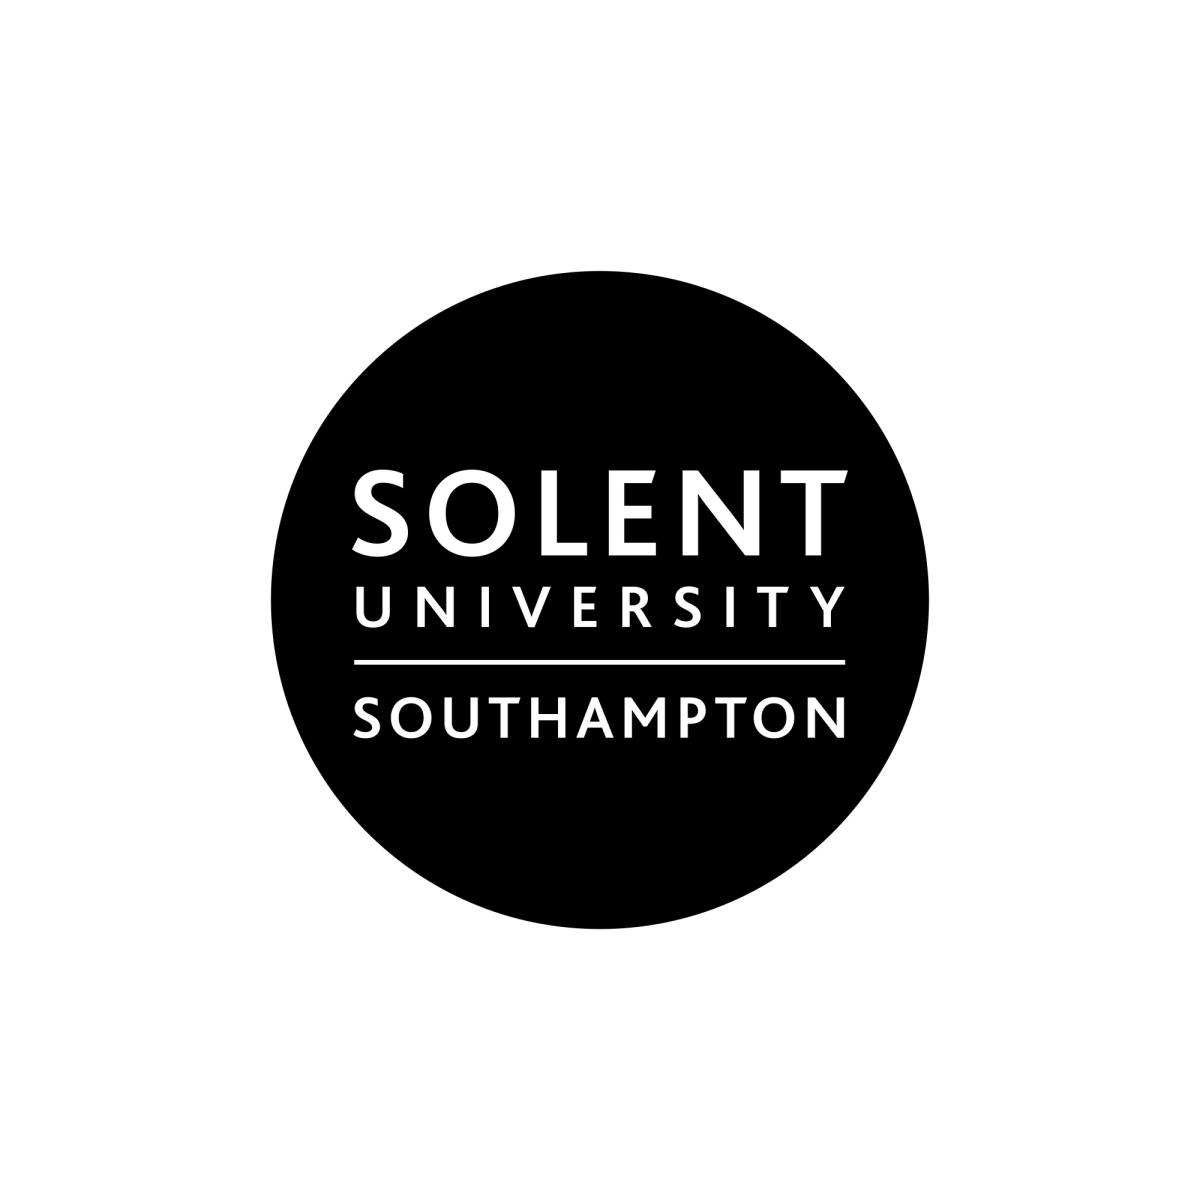 psLondon client case study featuring Solent University - Southampton